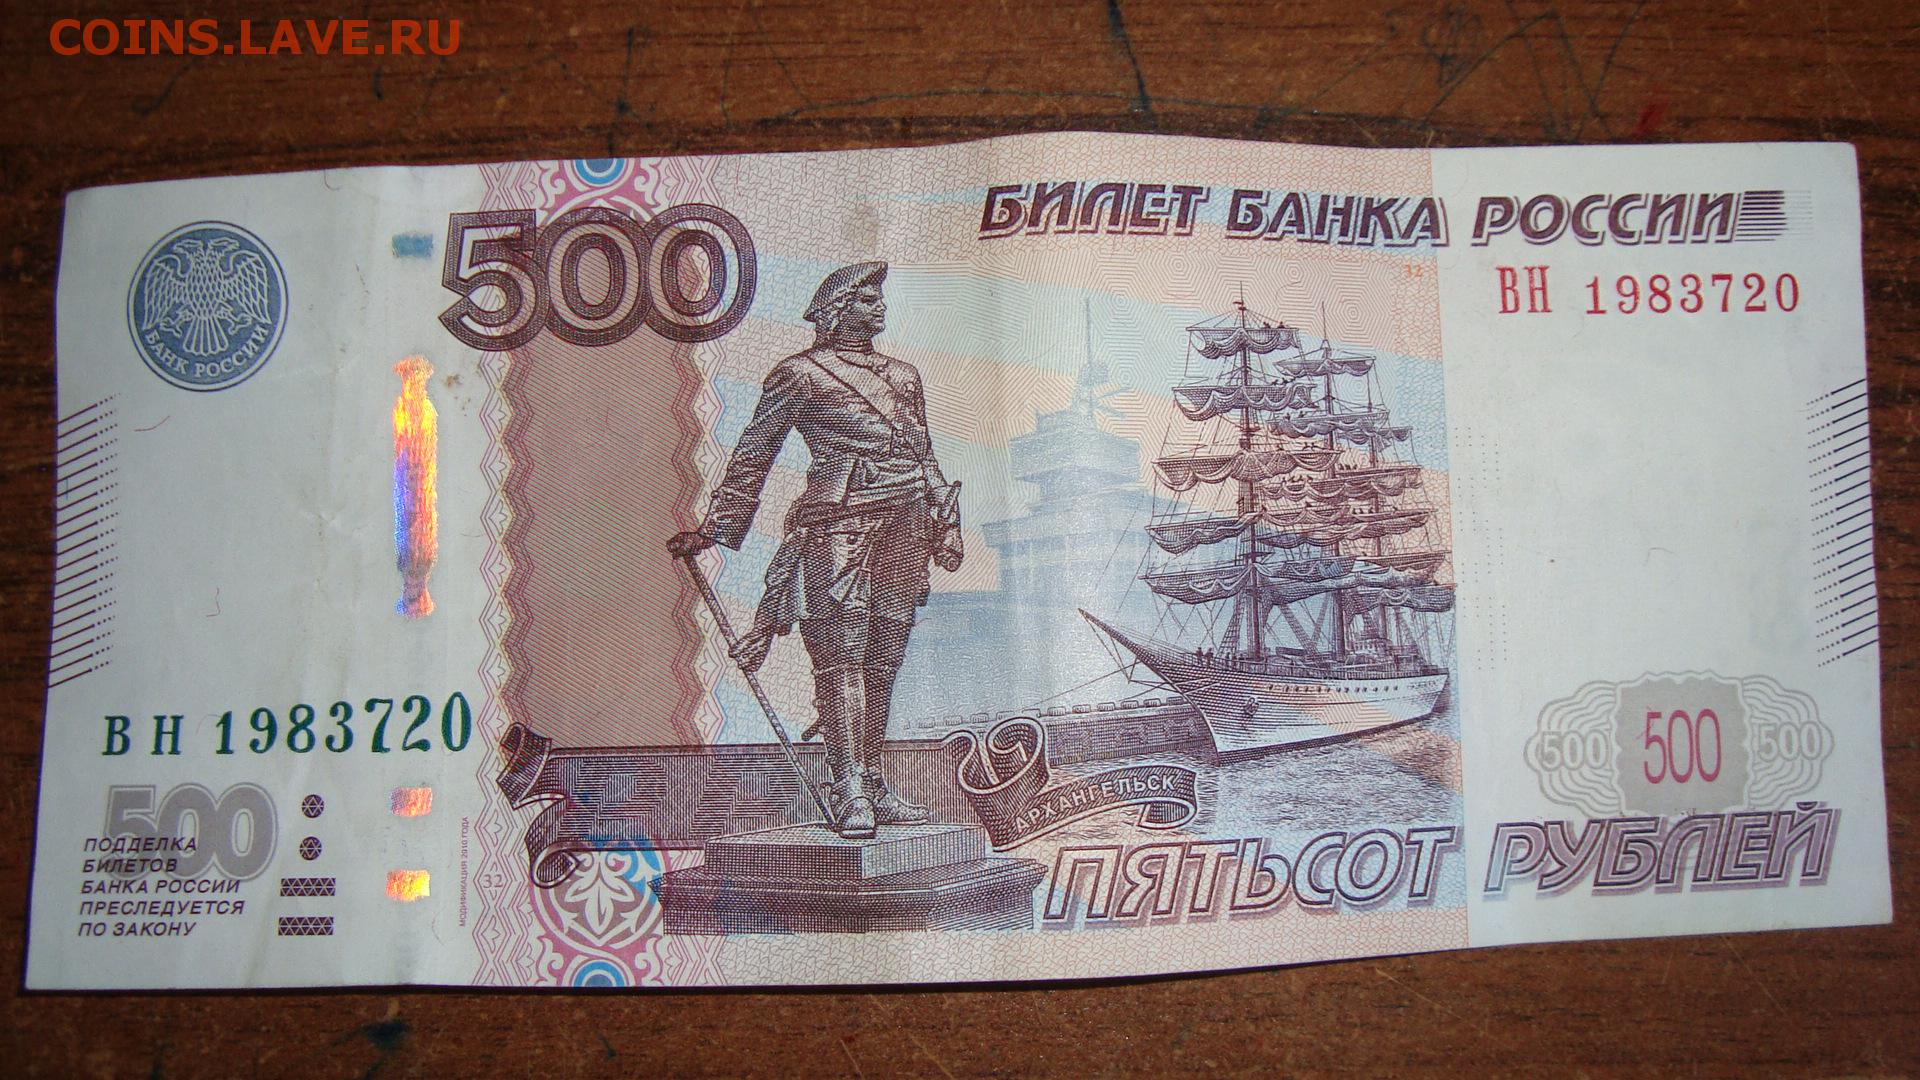 500 рублей на номер телефона. 500 Рублей. Красивые номера на банкнотах. 500 Рублей купюра для печати. 500 Рублей с номером 2595259.